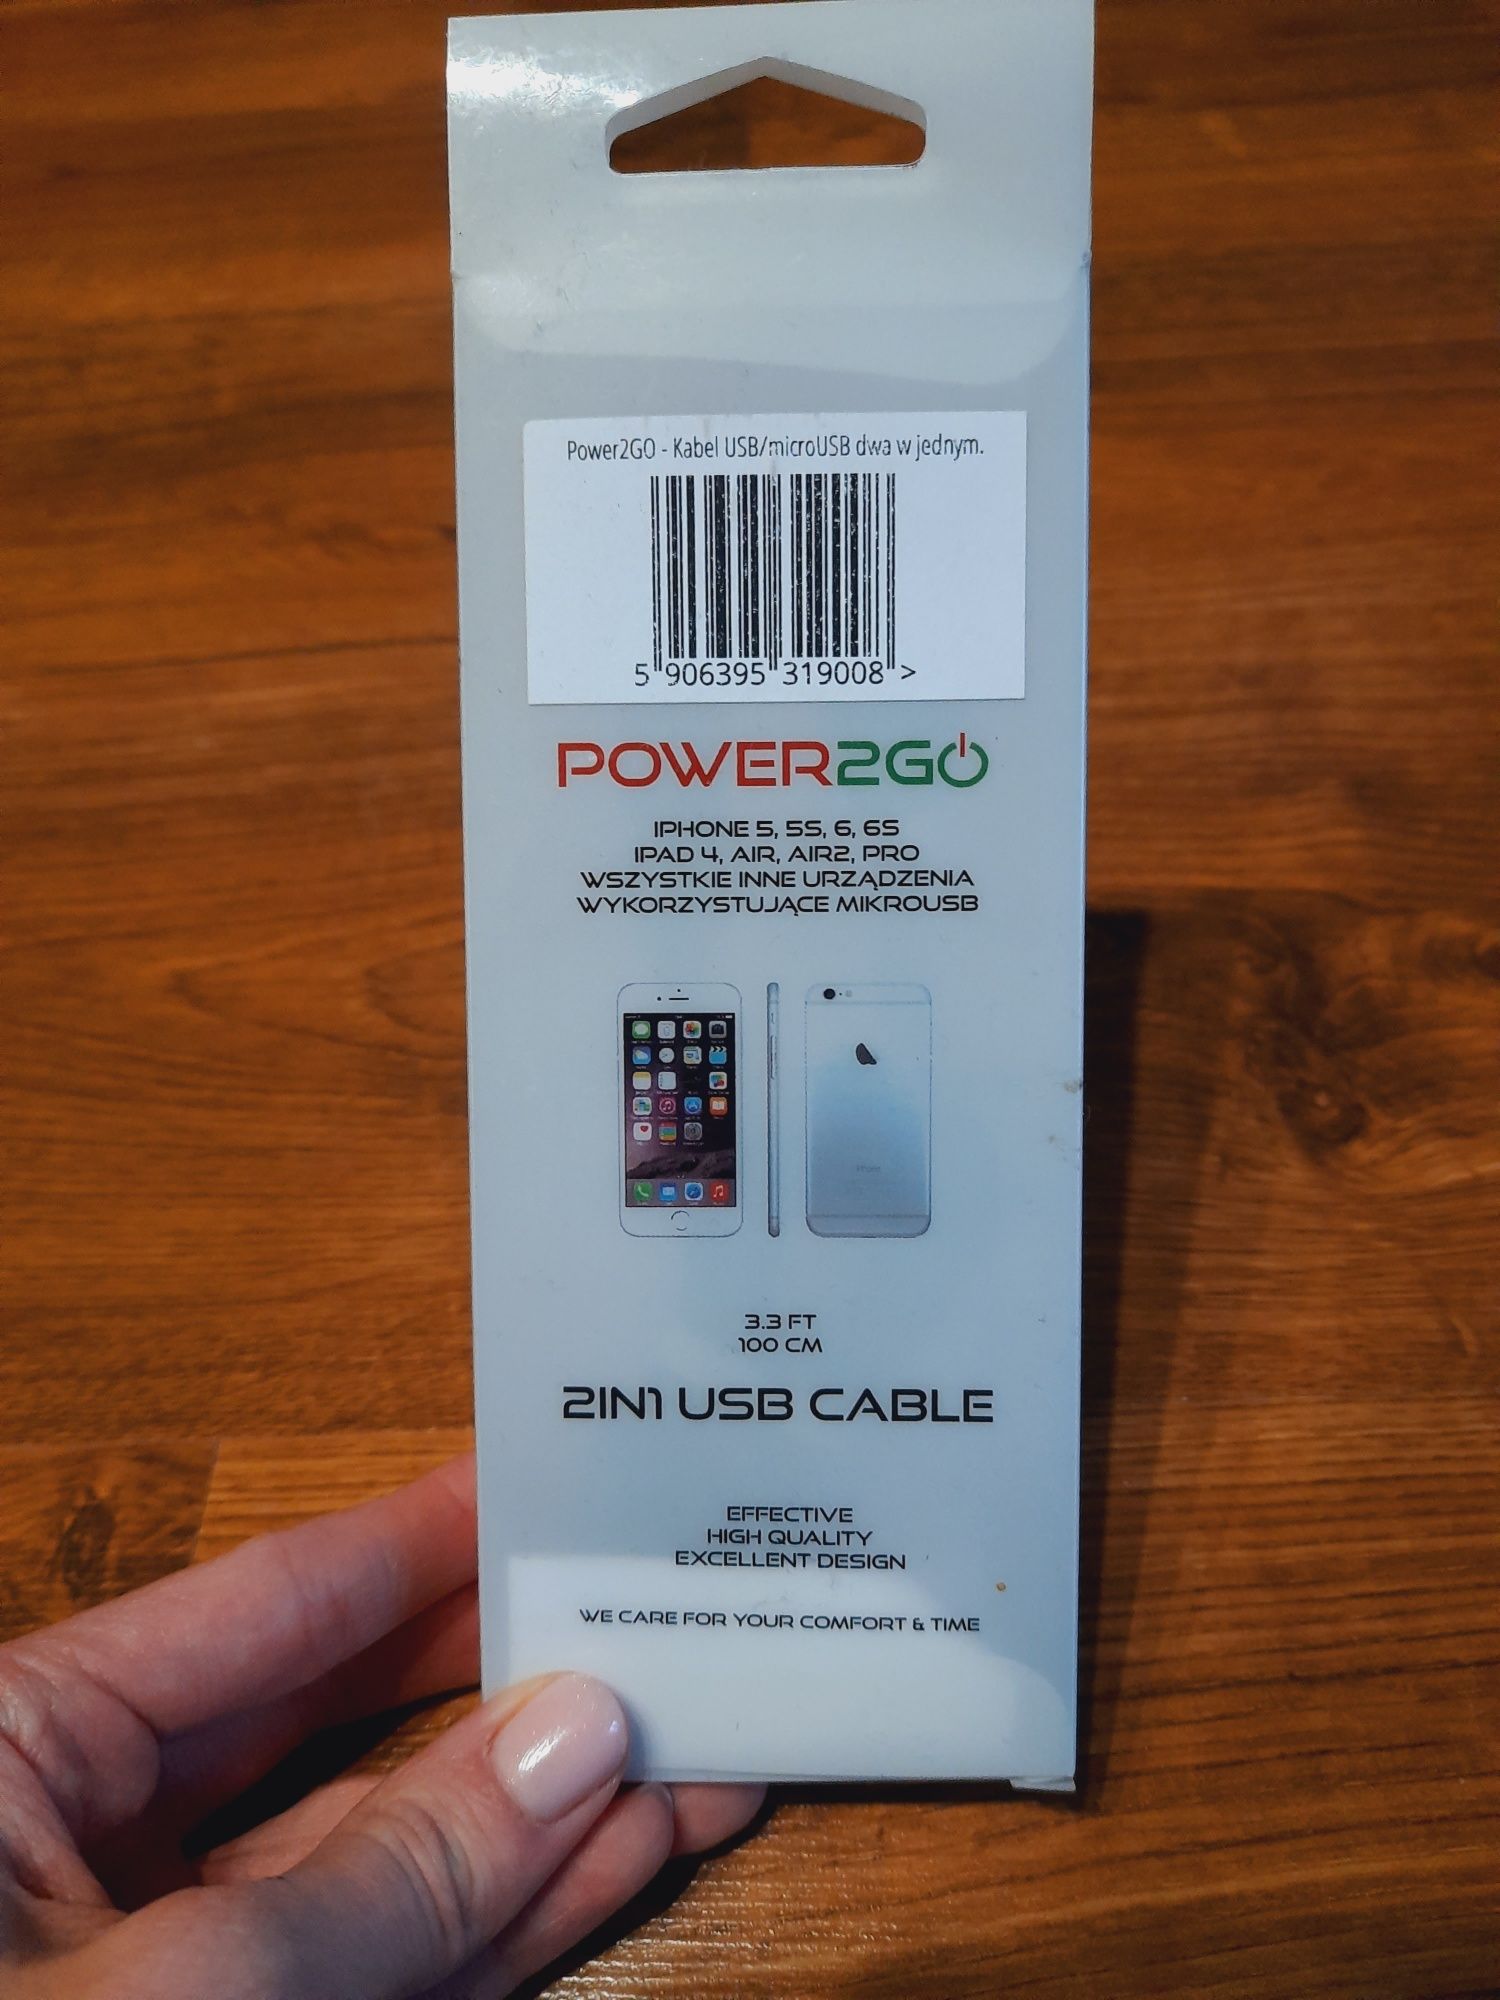 Power2go 1 m, kabel USG/microUSB dwa w jednym, iPhone 5, 5S, 6, 6S,